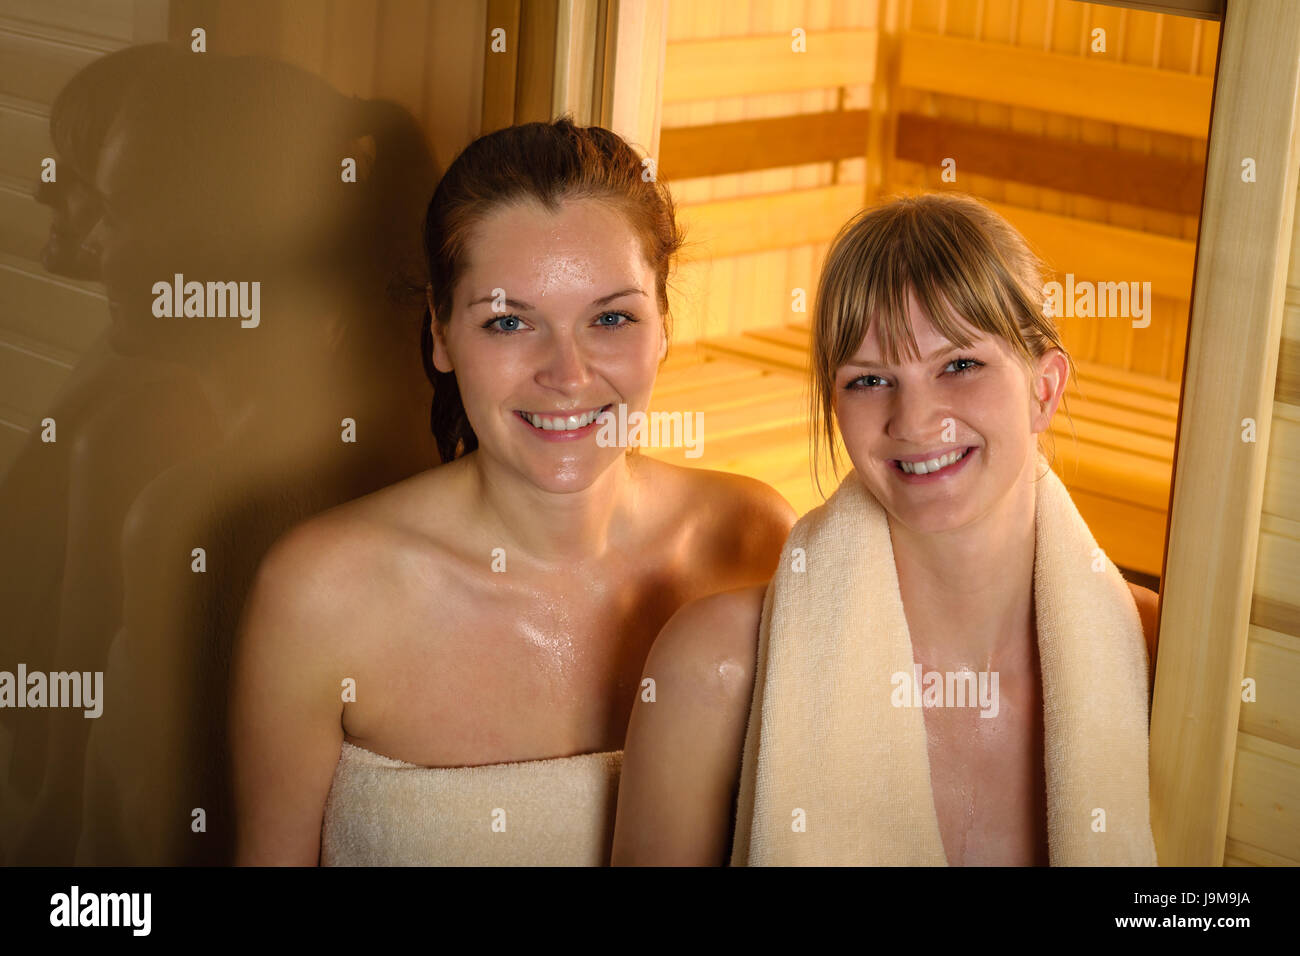 мы с сестрой моемся в бане голыми фото 6